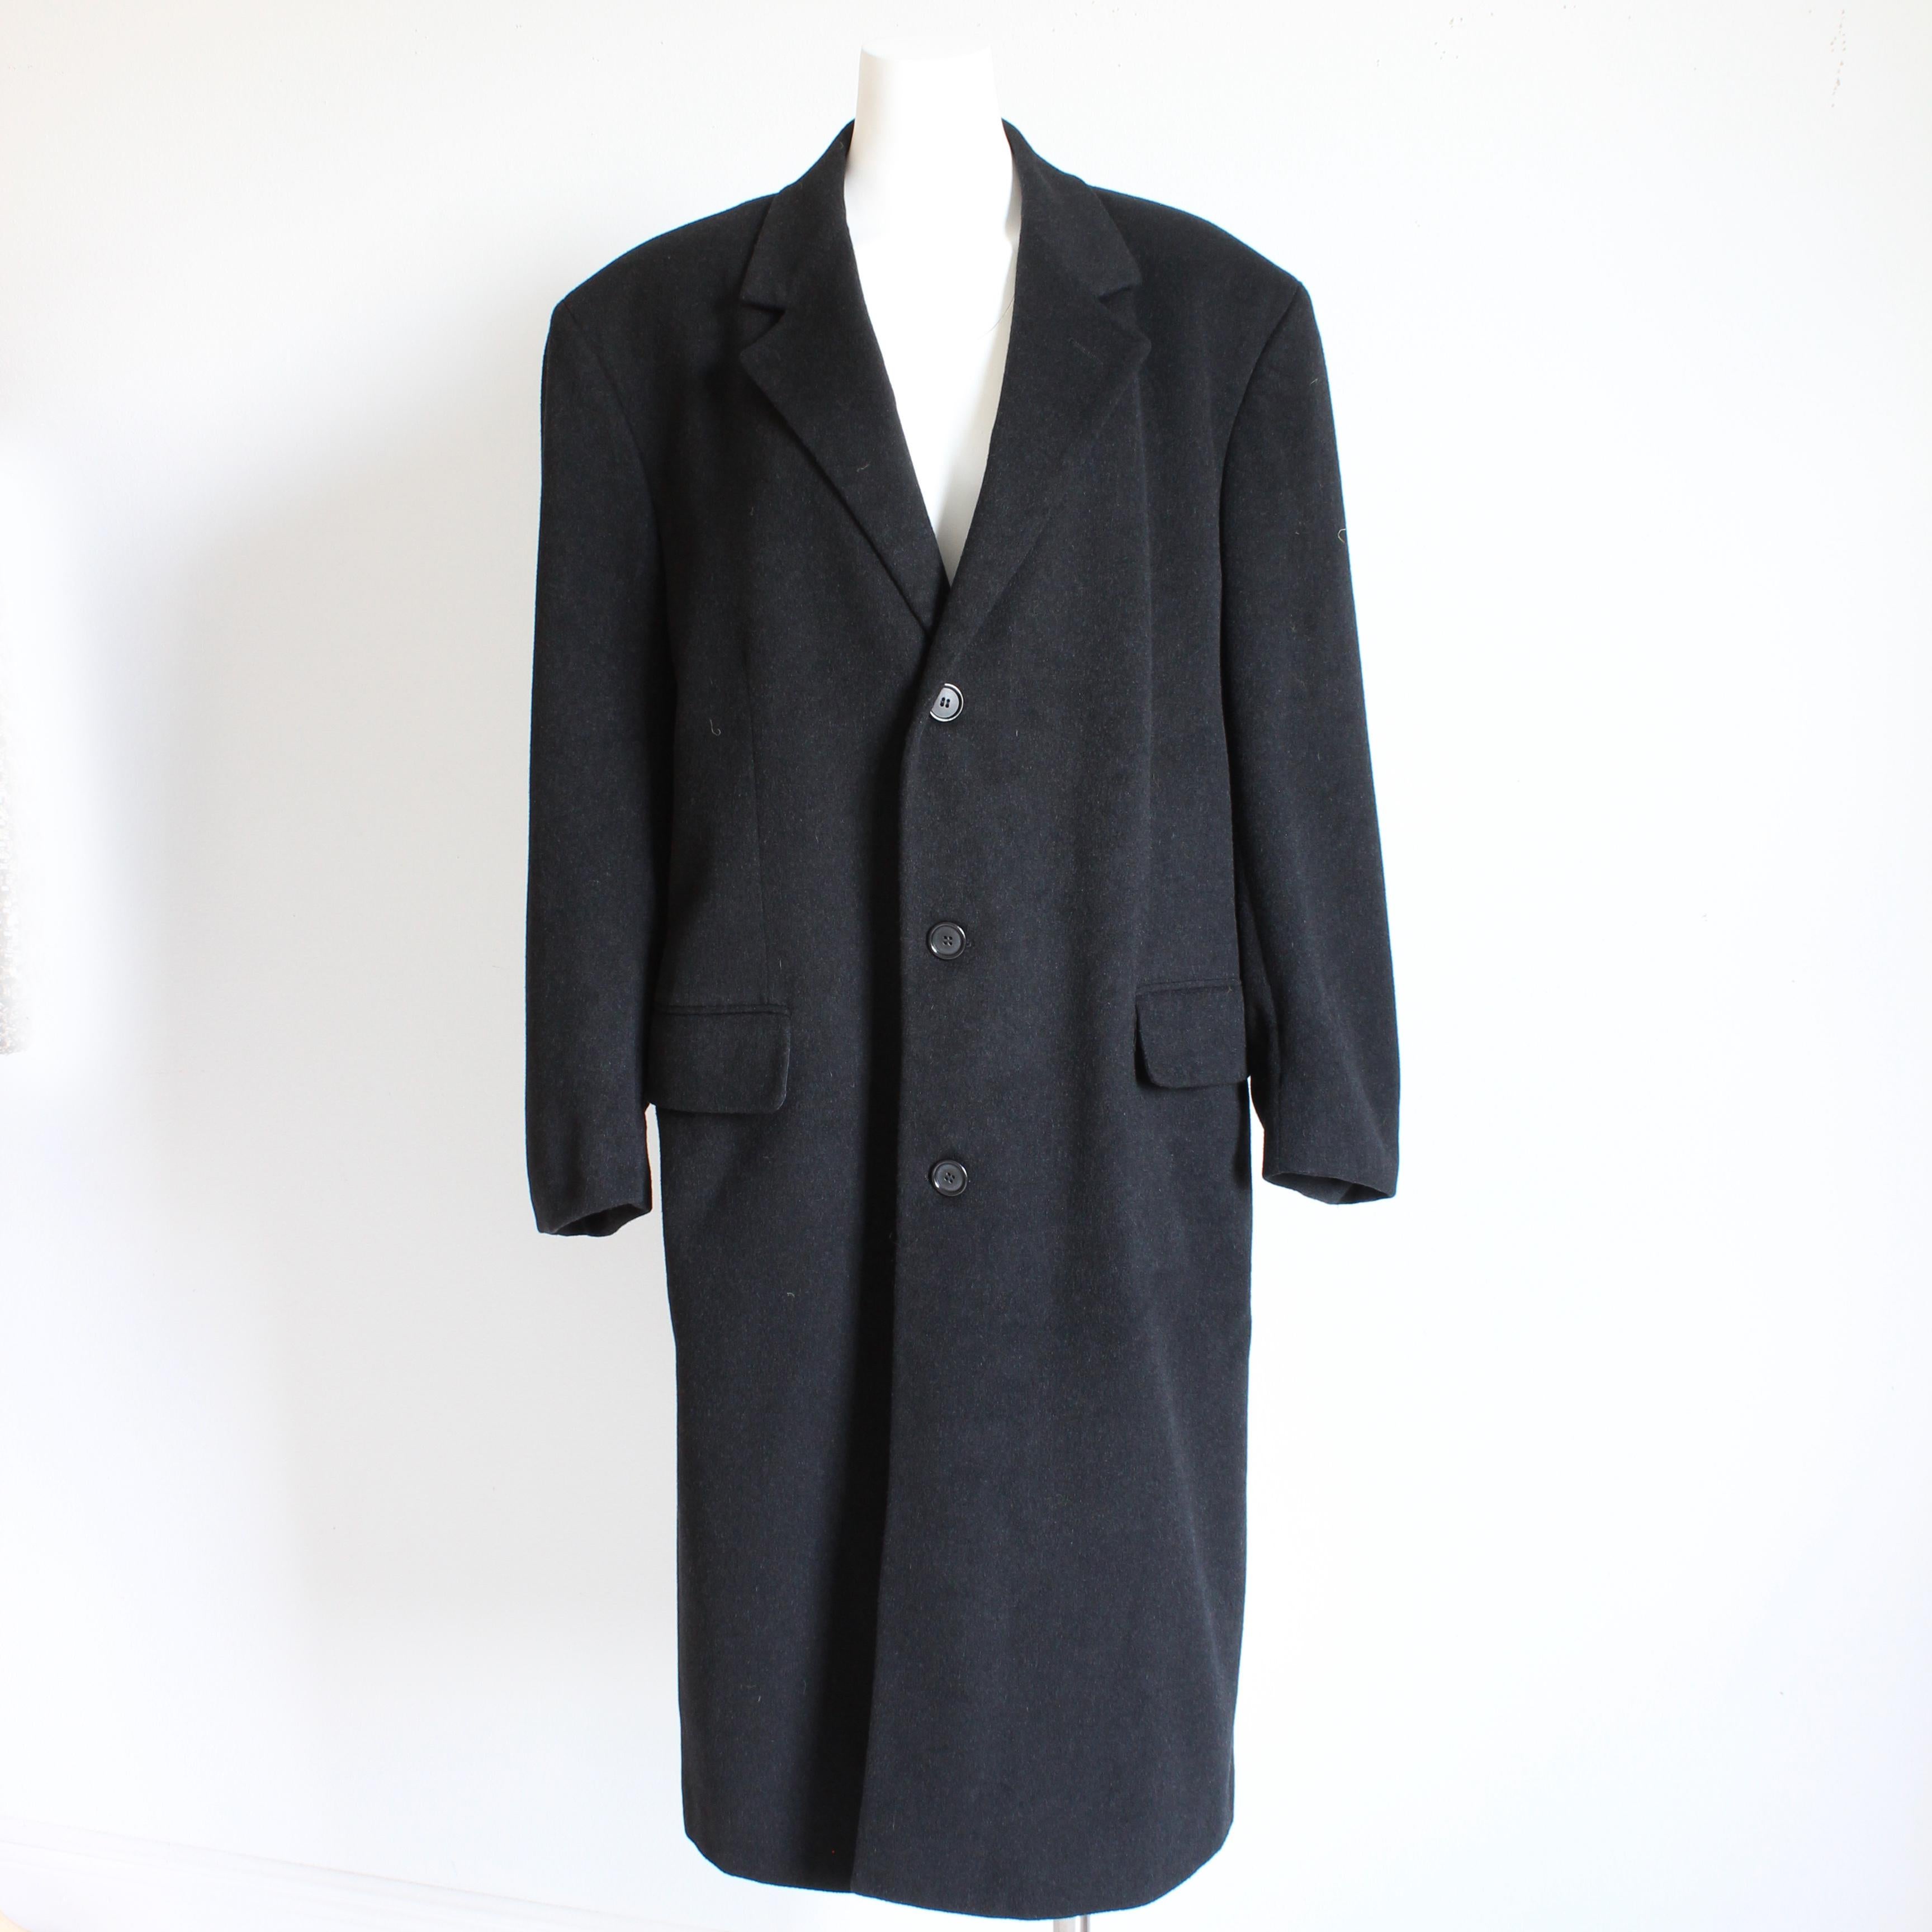 Manteau authentique, d'occasion, vintage Bill Blass Black Label en cachemire, probablement fabriqué dans les années 90. Confectionné dans un mélange de laine cachemire noire, il présente un style et une construction classiques avec des poches à